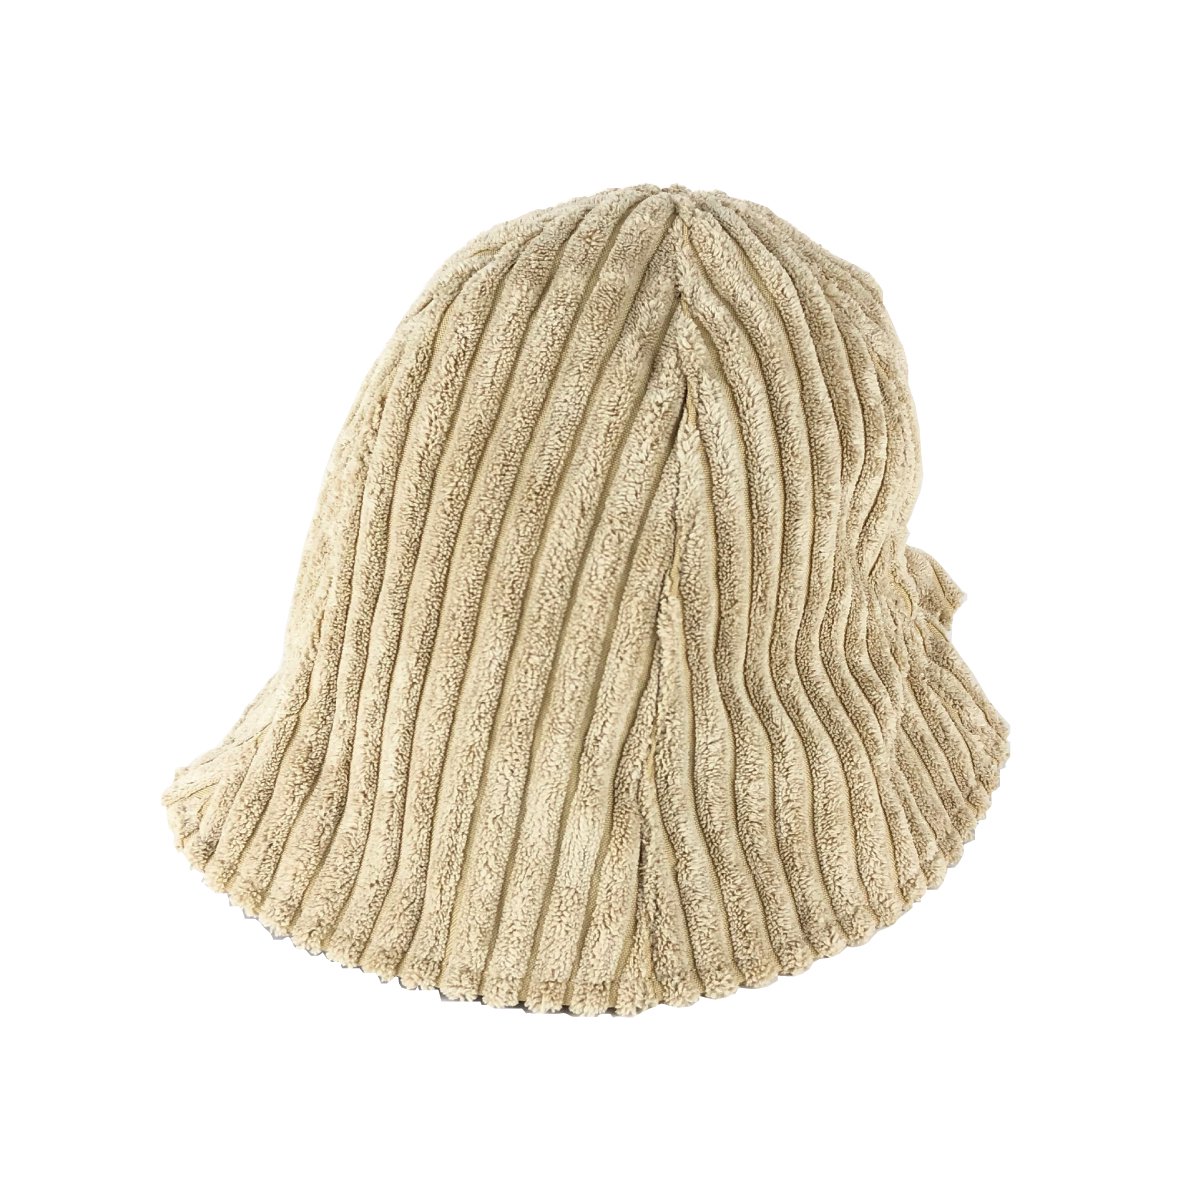 The ush COD Hat